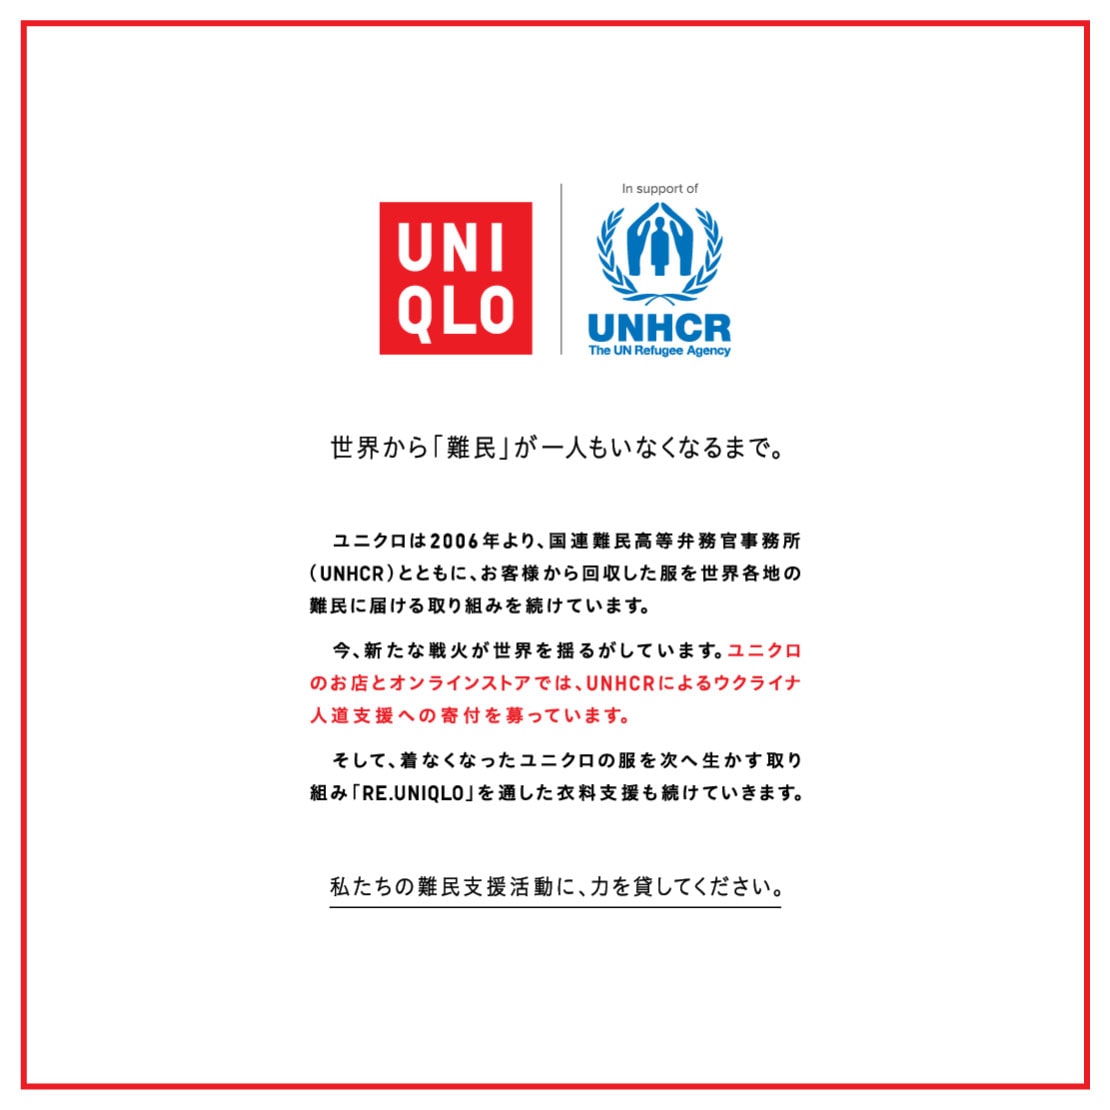 ユニクロのお店とオンラインストアでは、UNHCRによるウクライナ人道支援への寄付を募っています。